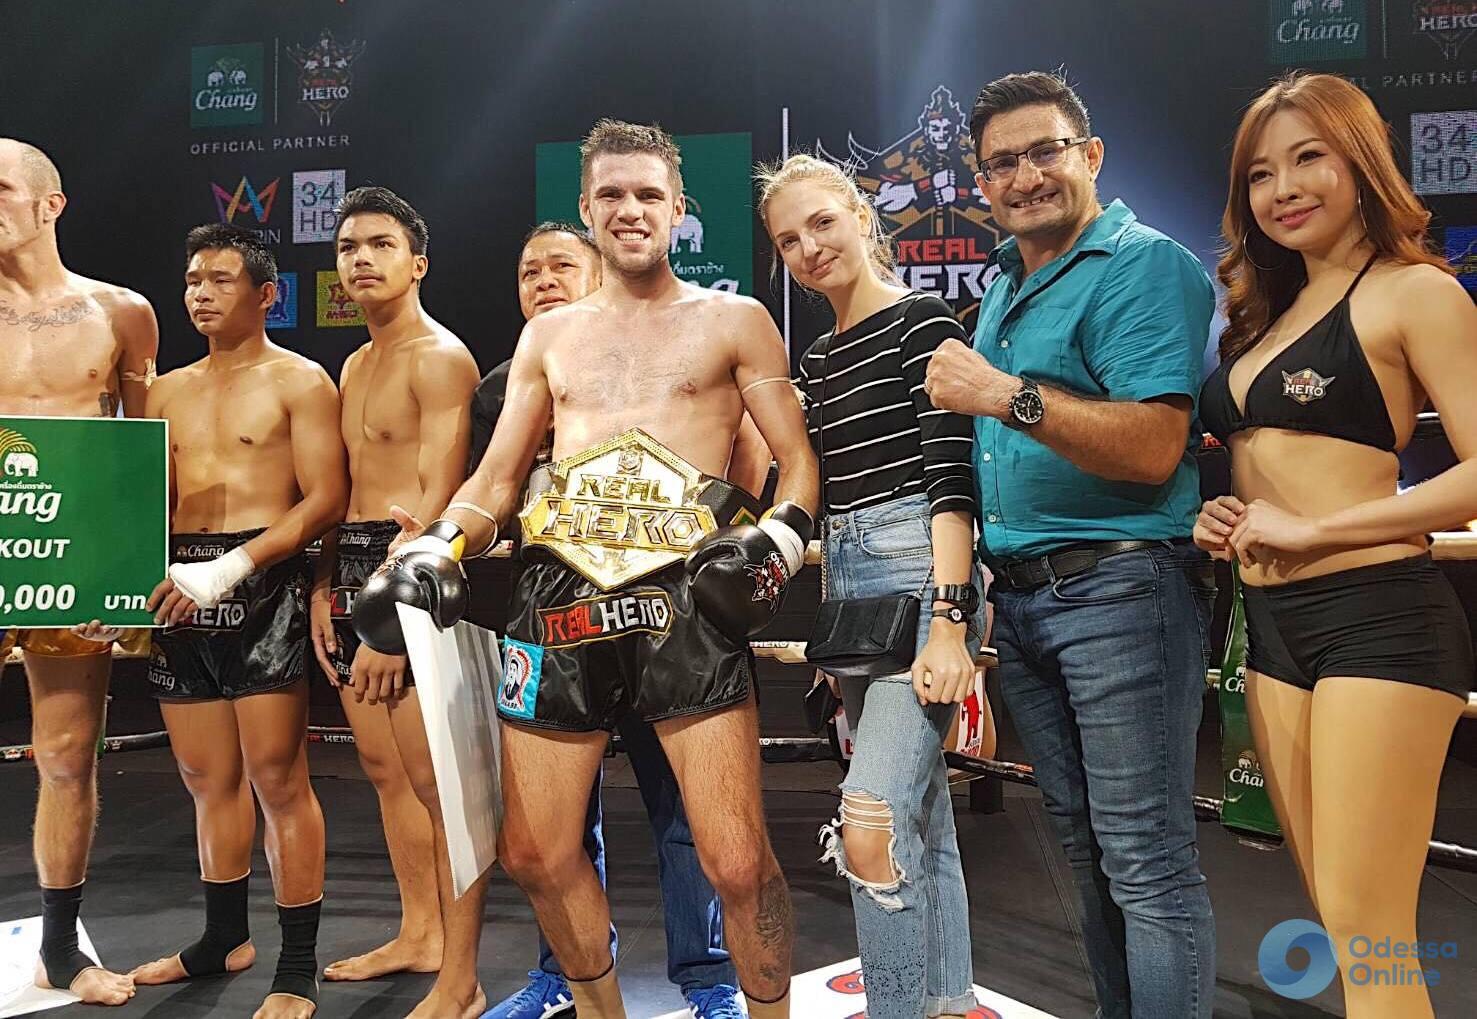 Одесский боец за 24 дня выиграл два международных турнира по таиландскому боксу